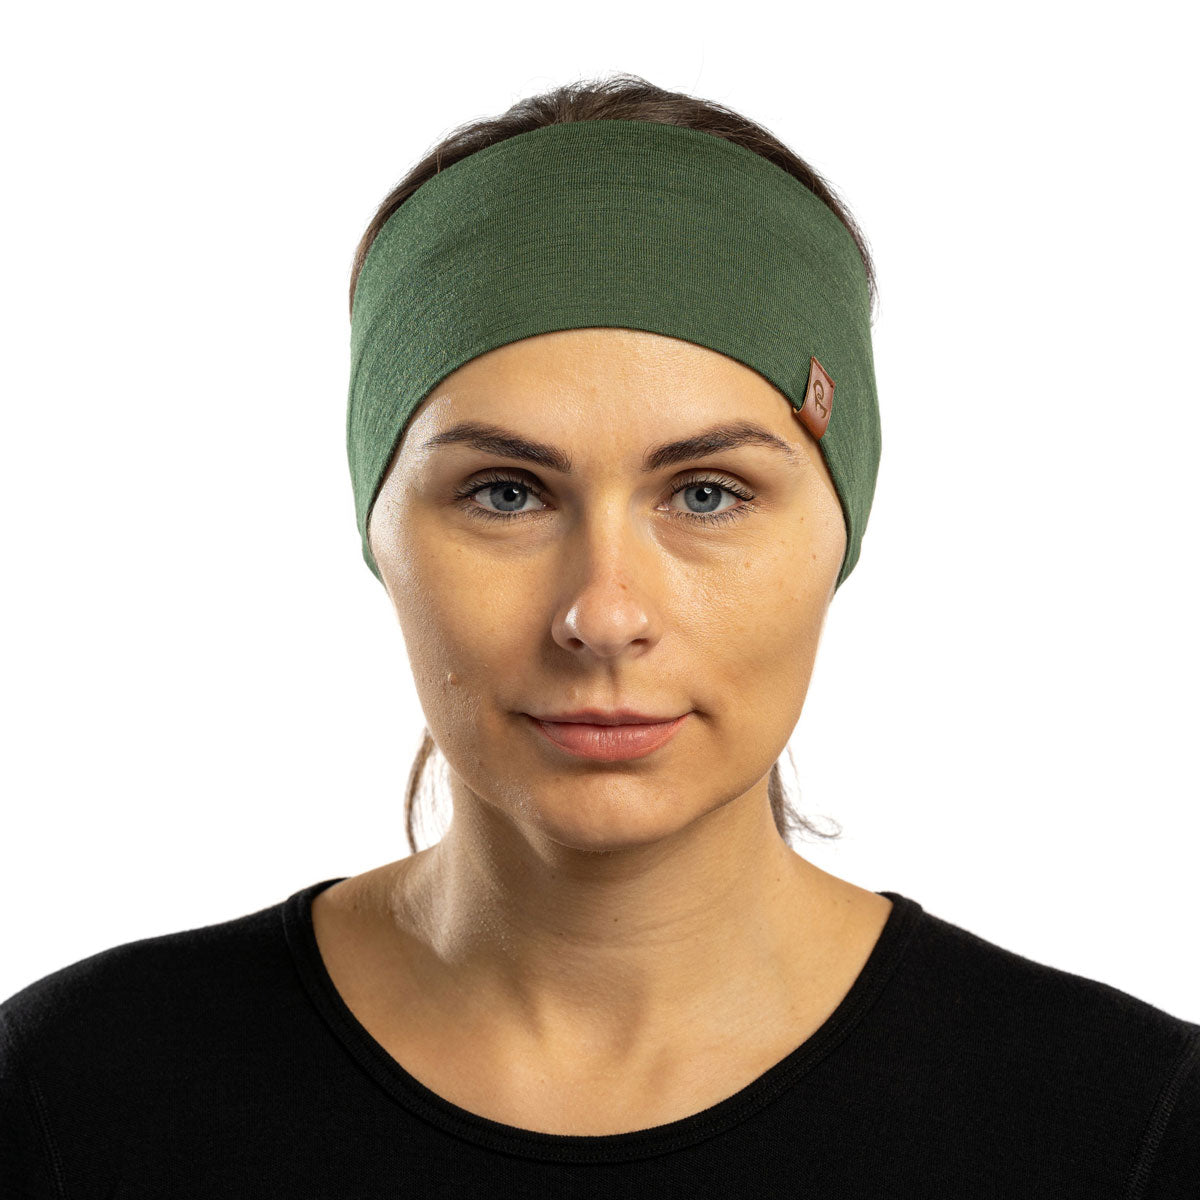 Merino Wool Headbands for Women Men Soft Hair Band Workout